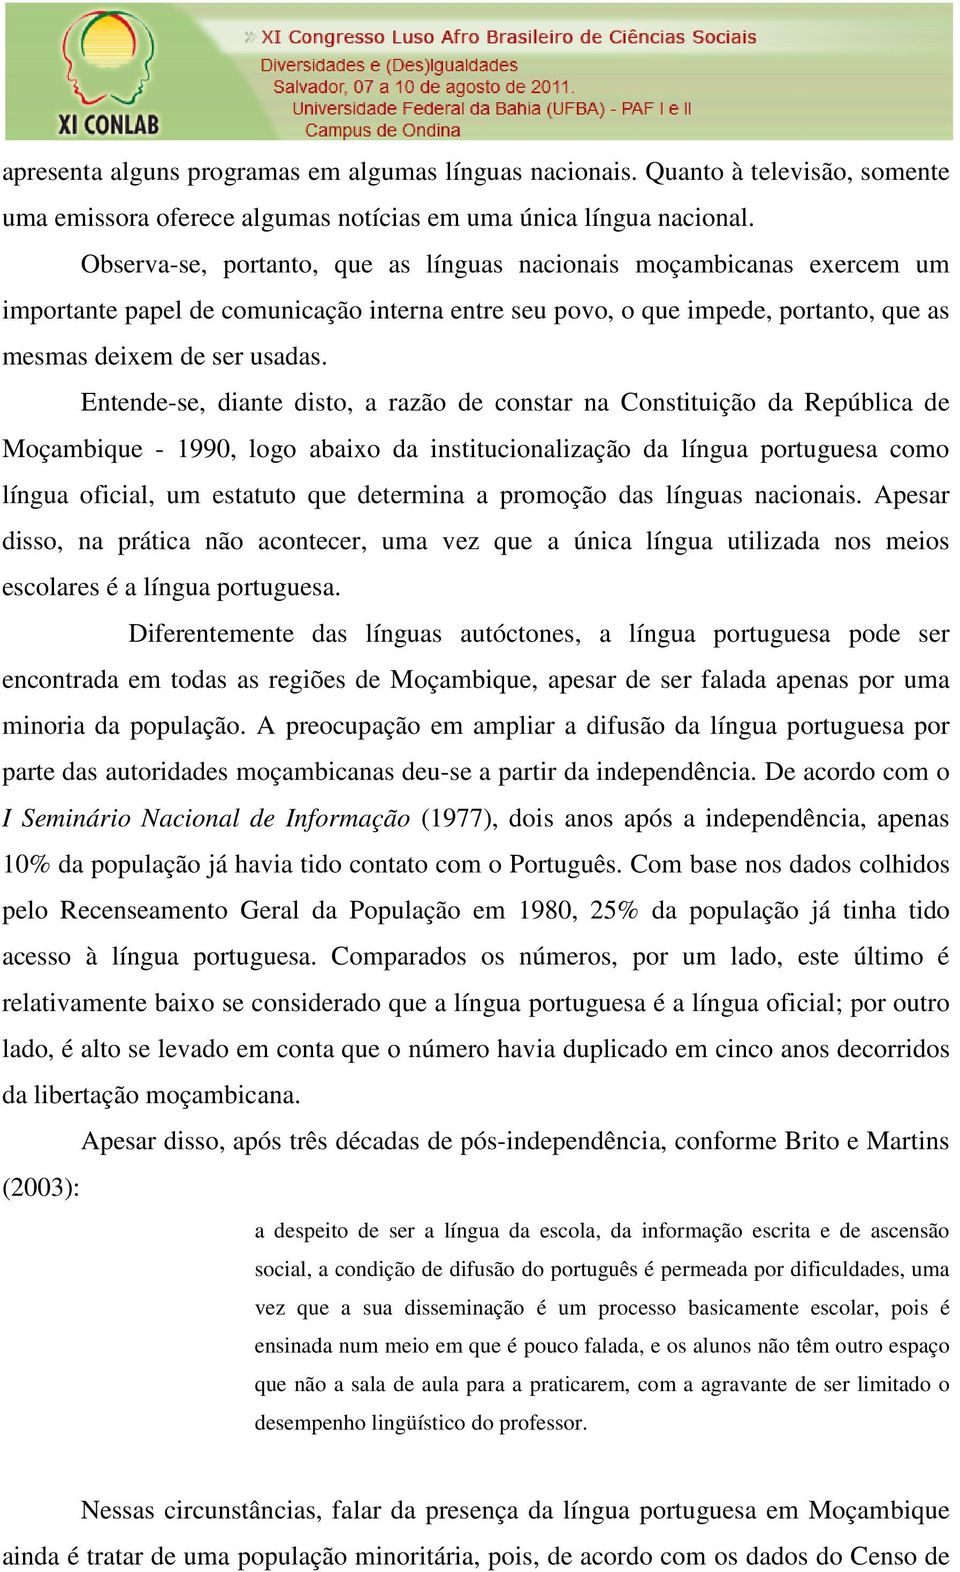 Entende-se, diante disto, a razão de constar na Constituição da República de Moçambique - 1990, logo abaixo da institucionalização da língua portuguesa como língua oficial, um estatuto que determina